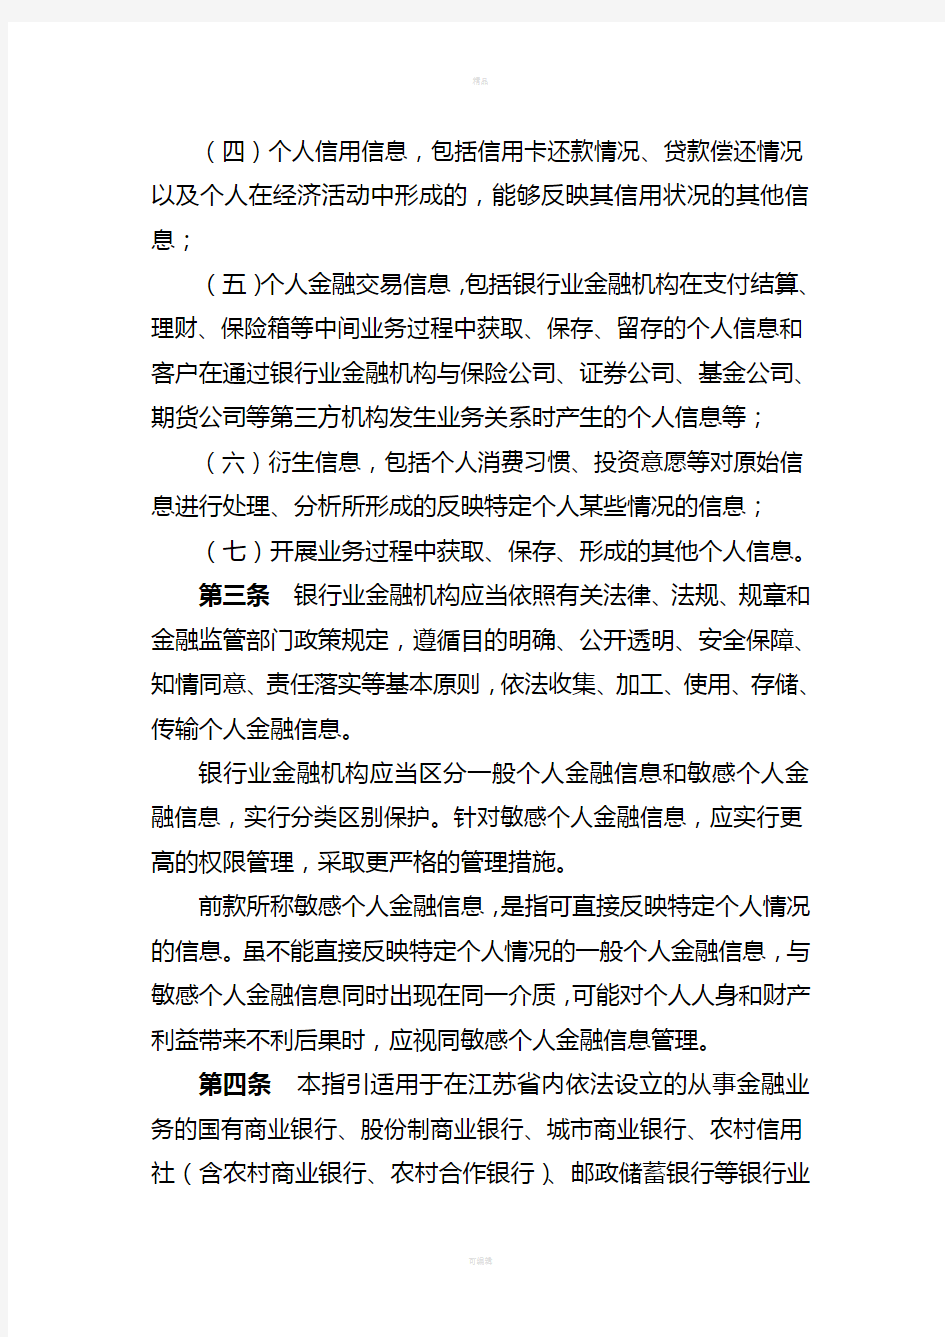 江苏省银行业金融机构客户个人金融信息保护工作指引(暂行)-2012完整版